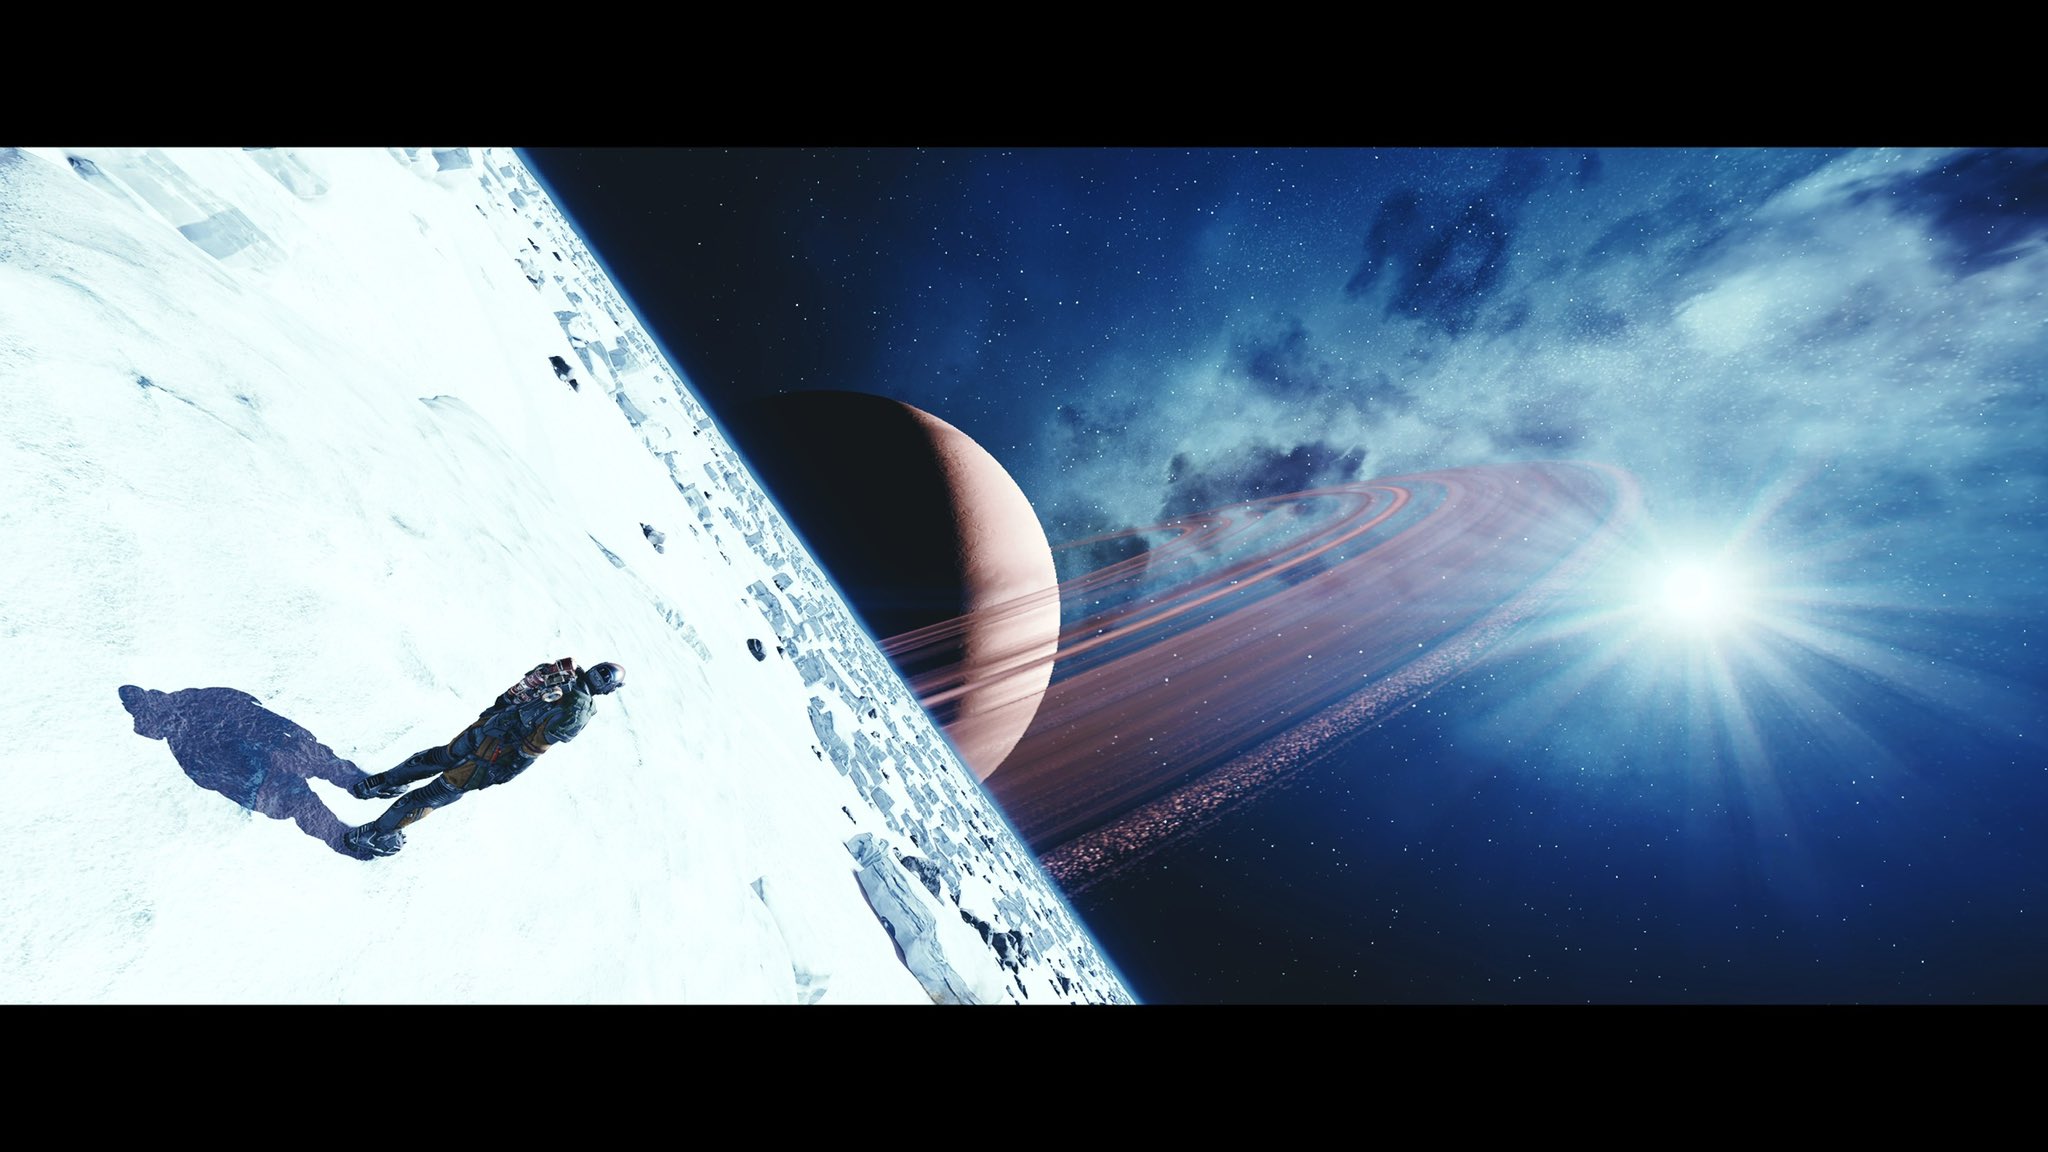 O jogador estava na lua olhando para um planeta próximo com a estrela distante brilhando.